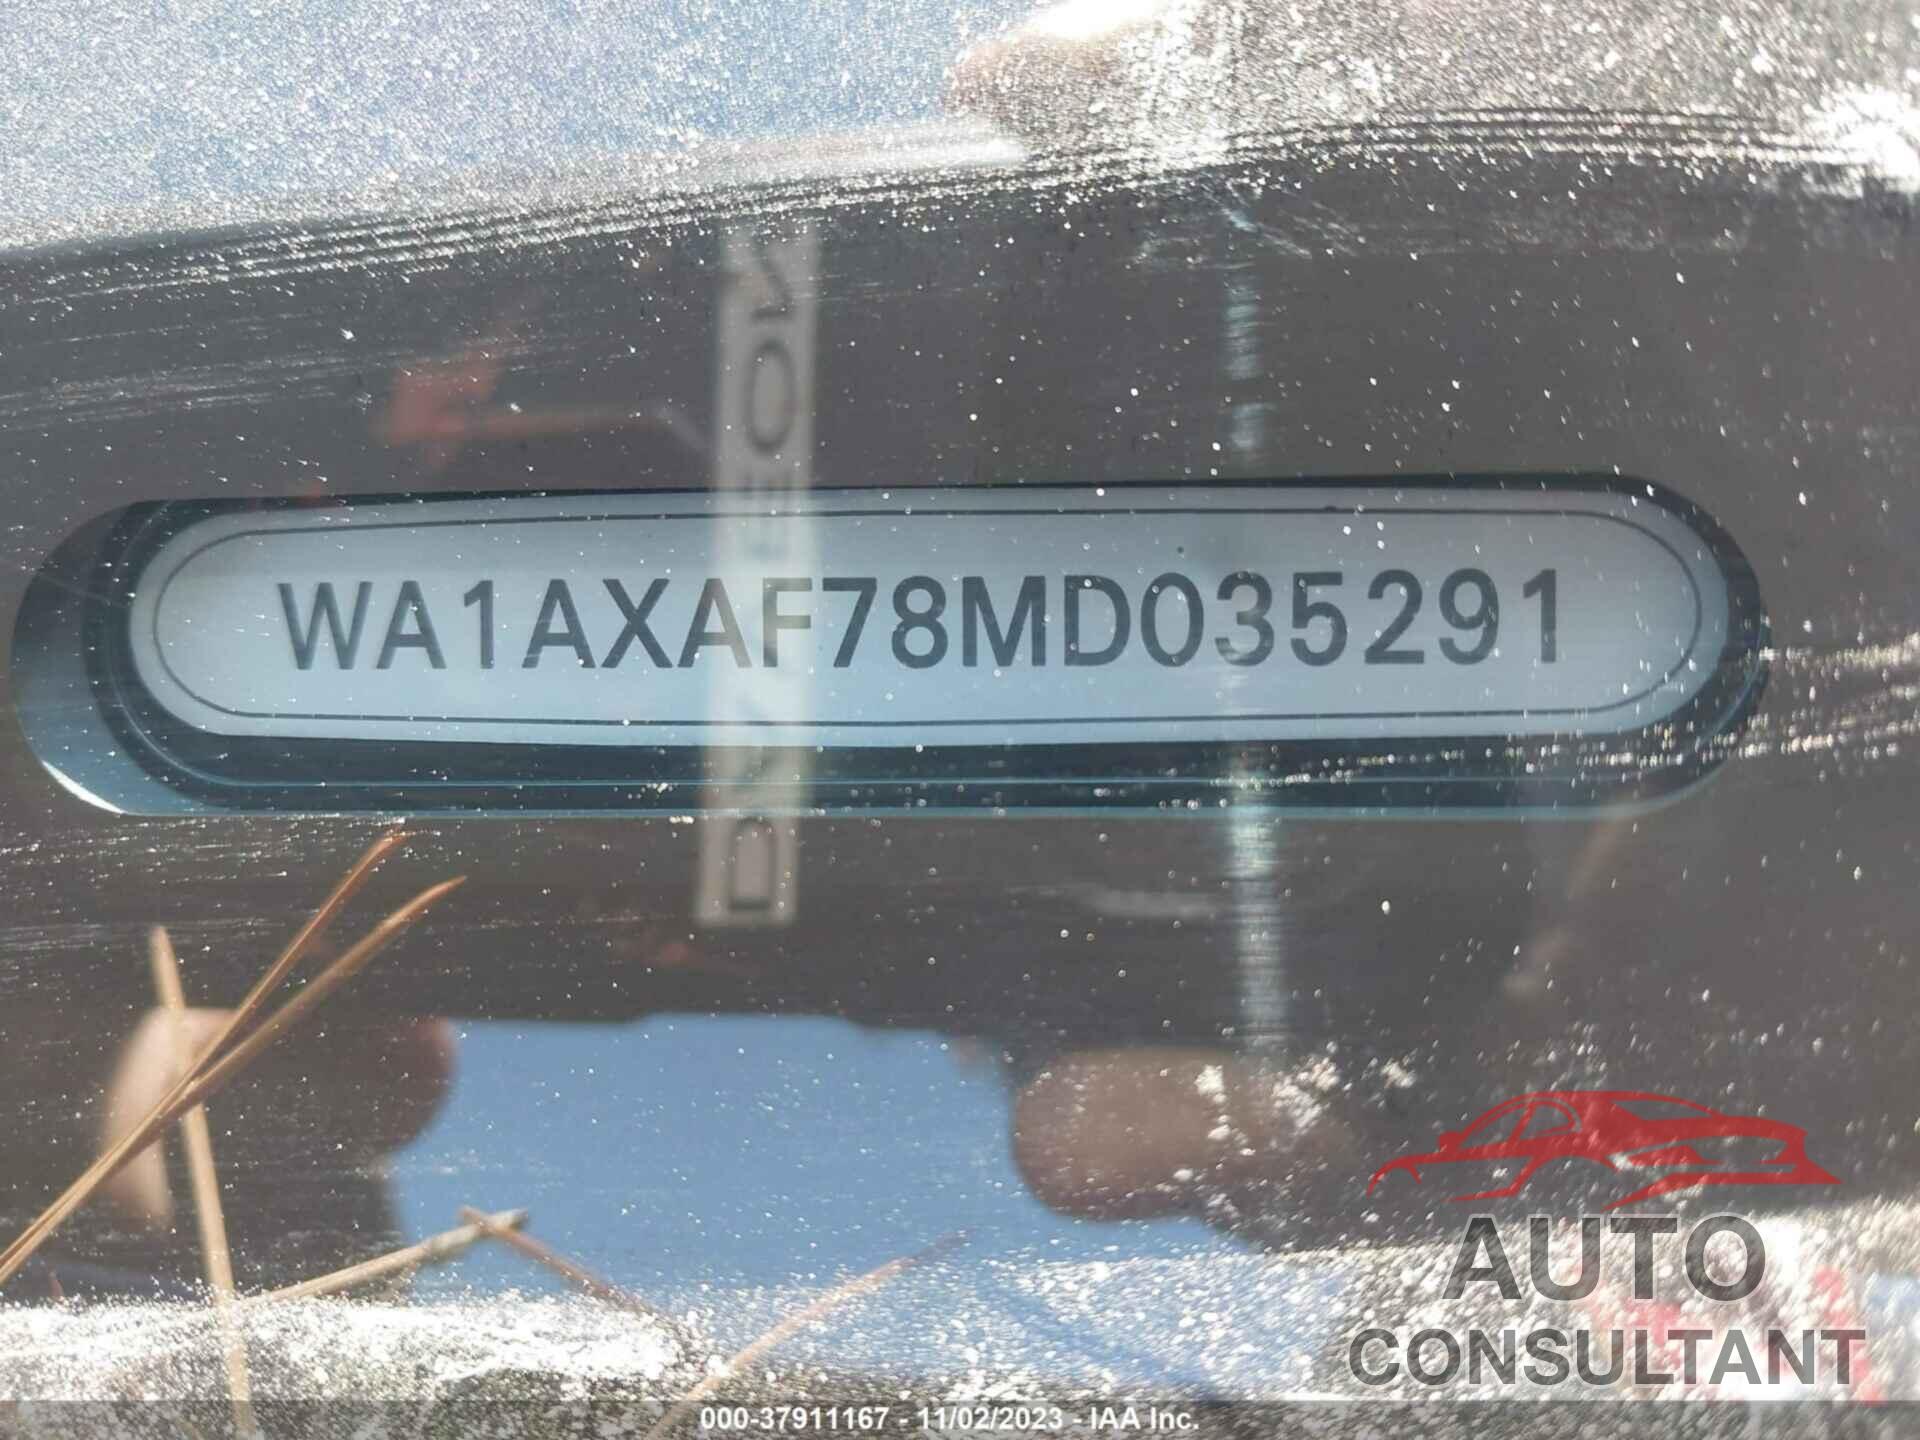 AUDI Q7 2021 - WA1AXAF78MD035291